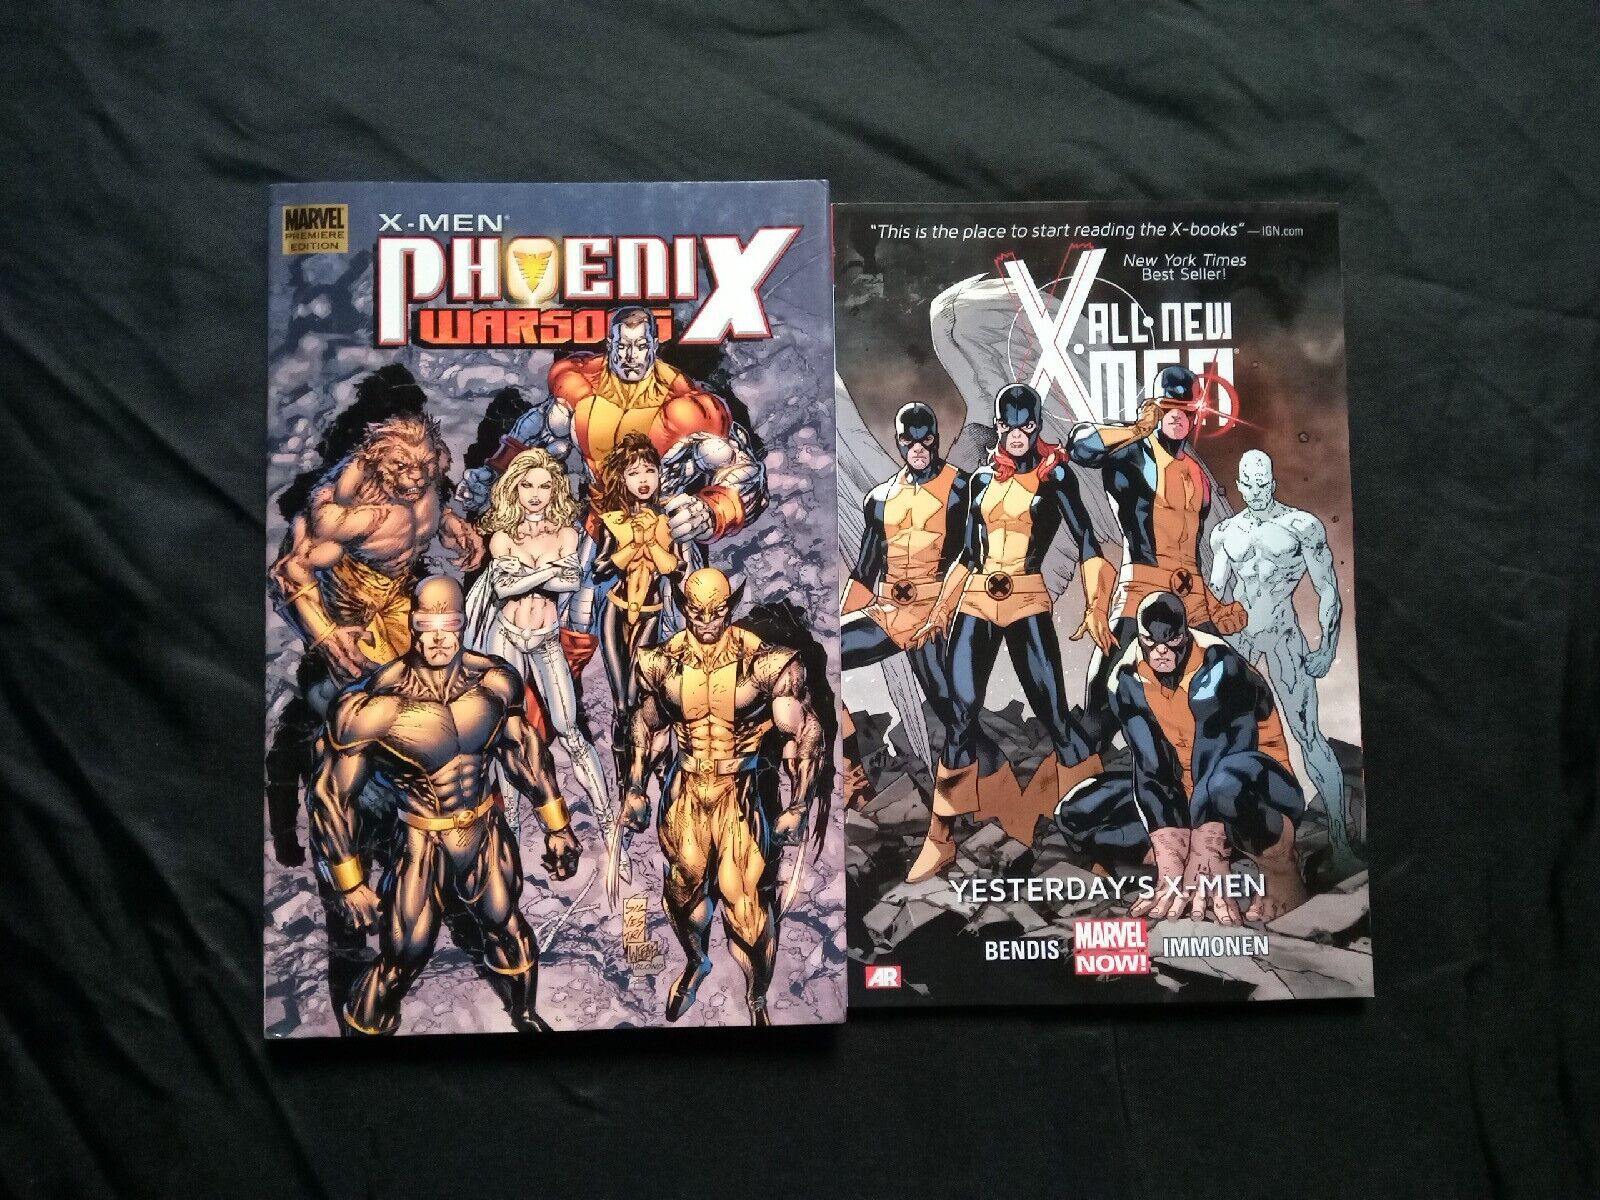 All new X-Men Volume 1: Yesterday\'s X-Men Hardcover & X-Men Phoenix Warsong TPB